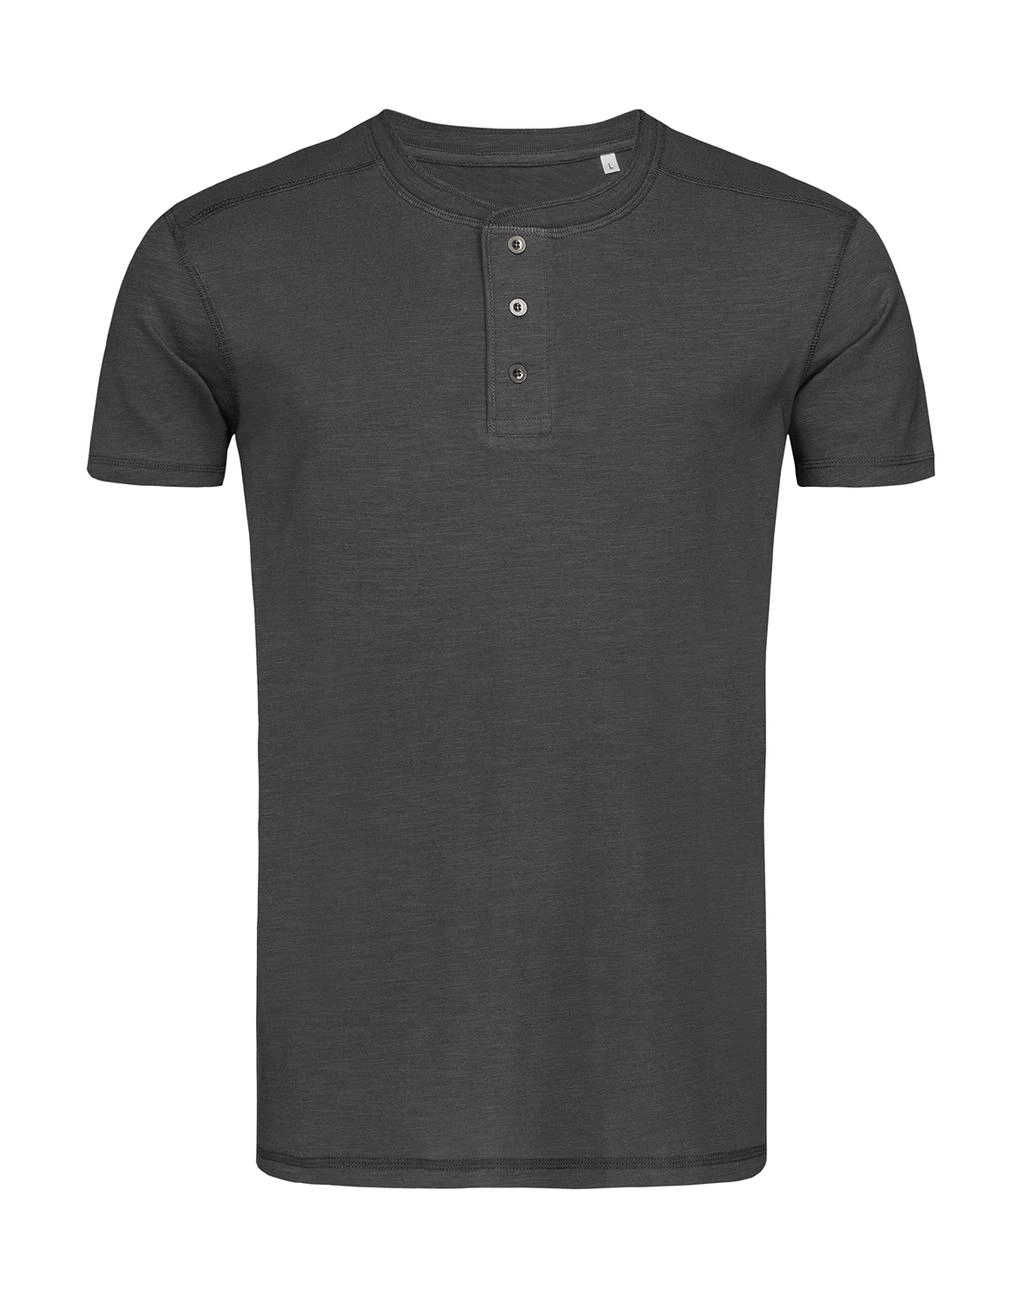 Shawn Henley T-shirt Men zum Besticken und Bedrucken in der Farbe Slate Grey mit Ihren Logo, Schriftzug oder Motiv.